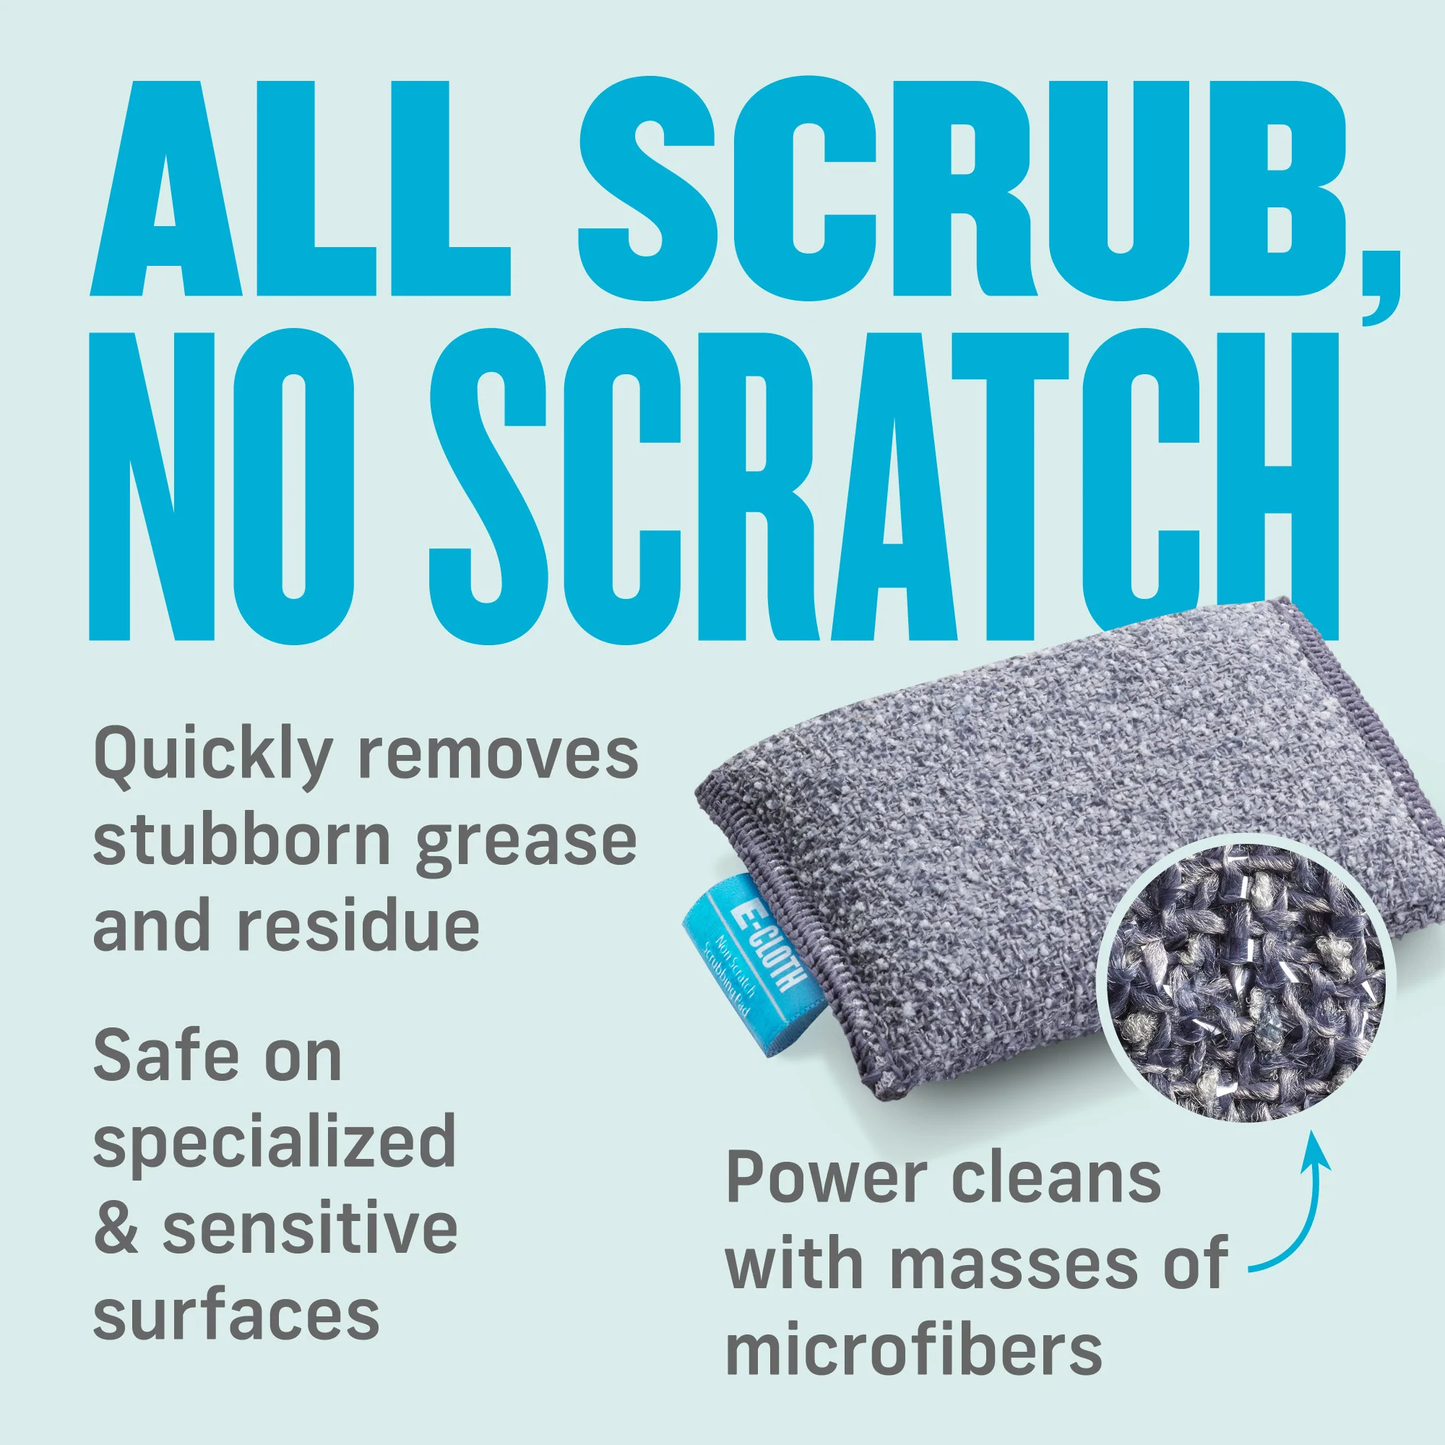 E-Cloth Non-Scratch Scrub Pads (Set of 2)